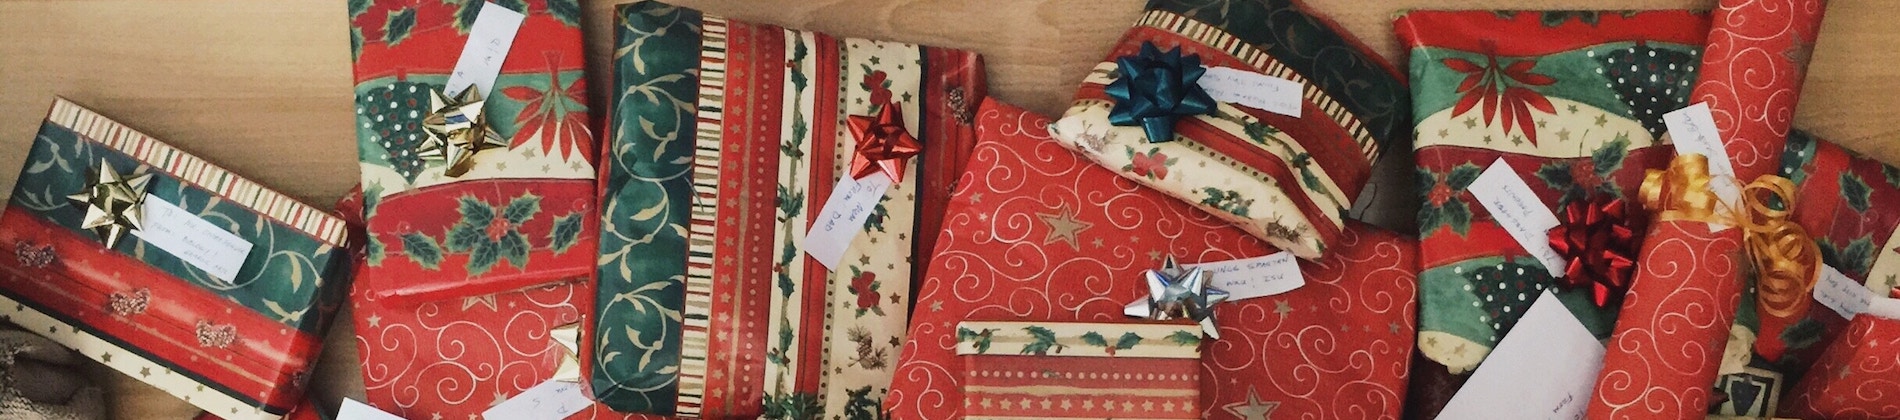 Eksperternes tips: Sådan forbereder du dig på julegaveindkøbene